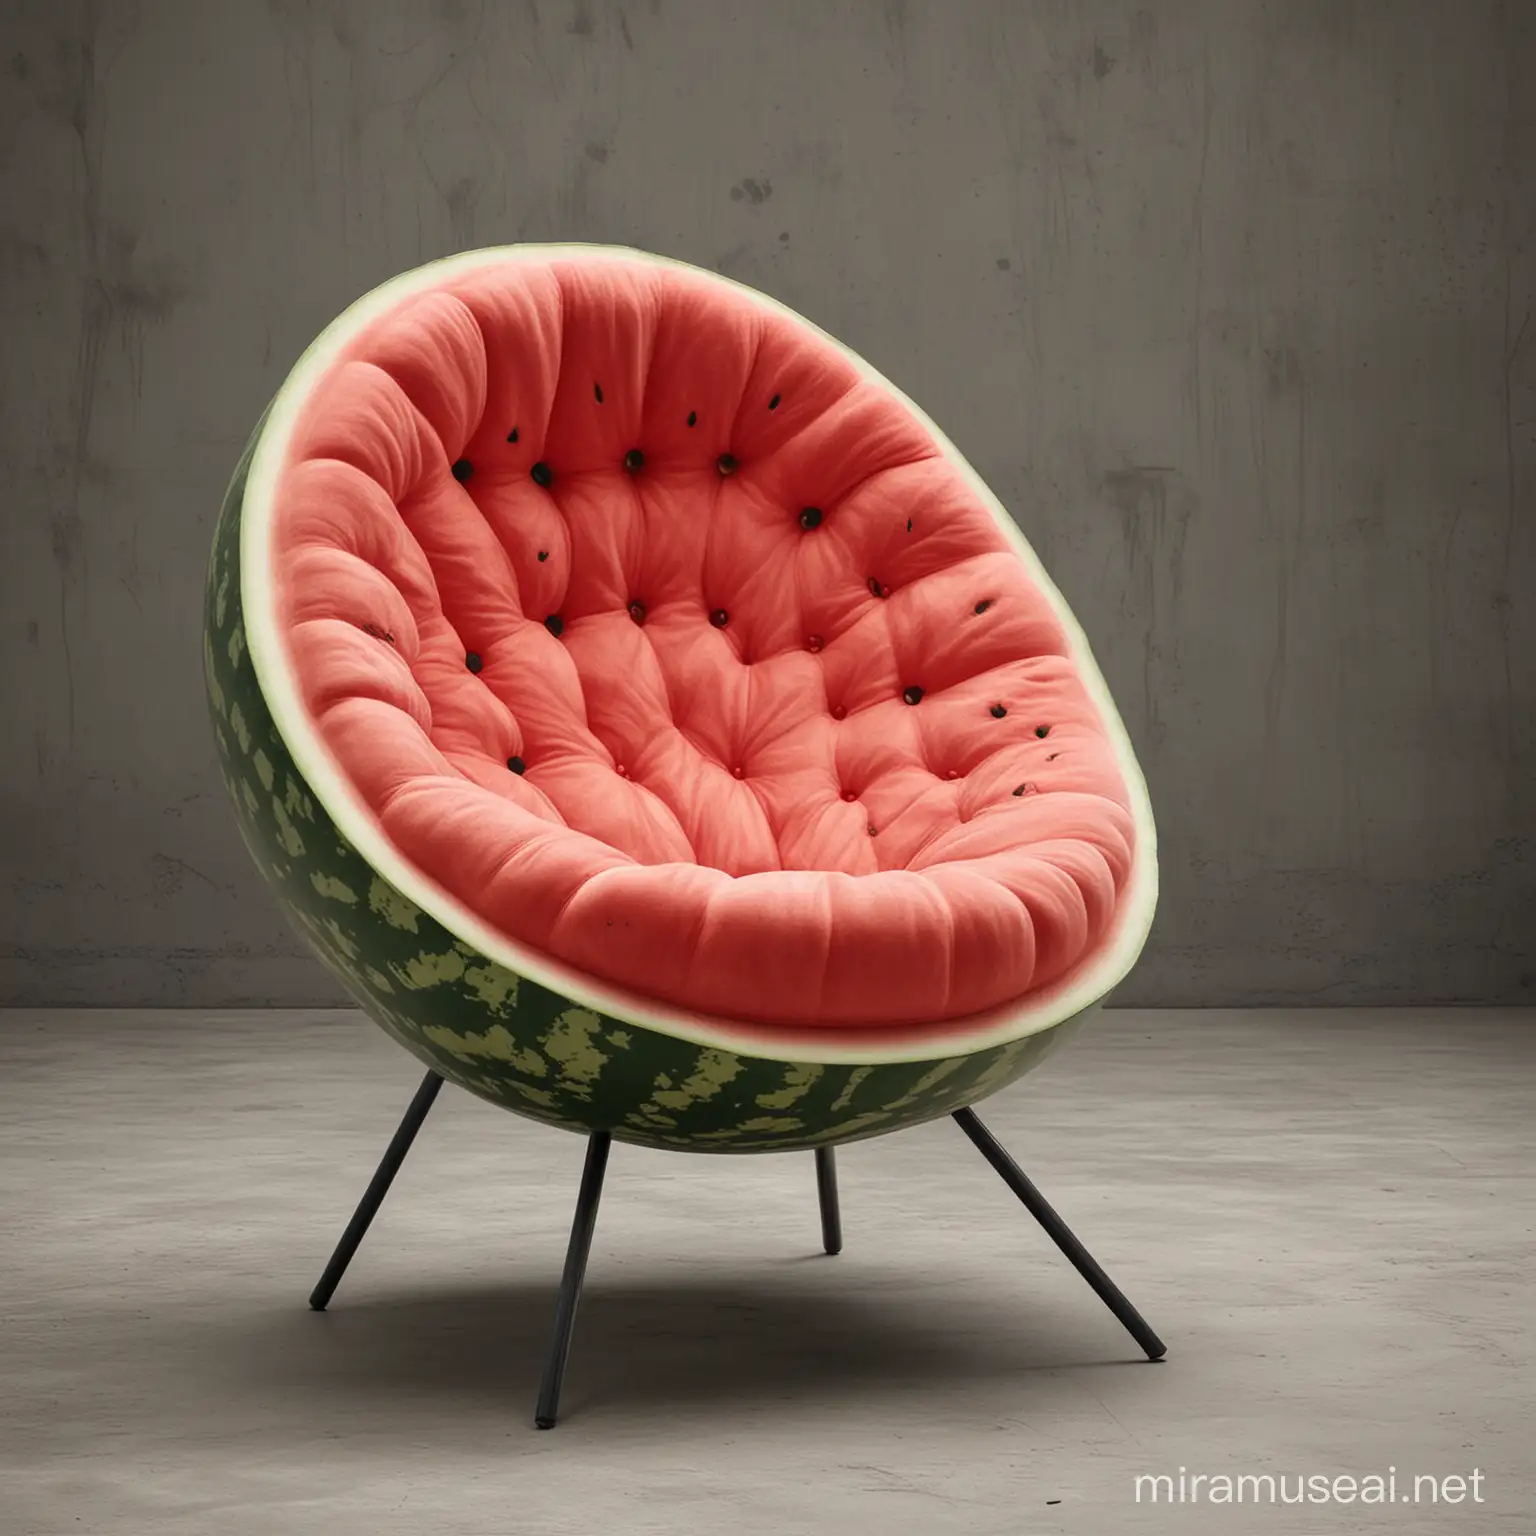 design a watermelon chair


